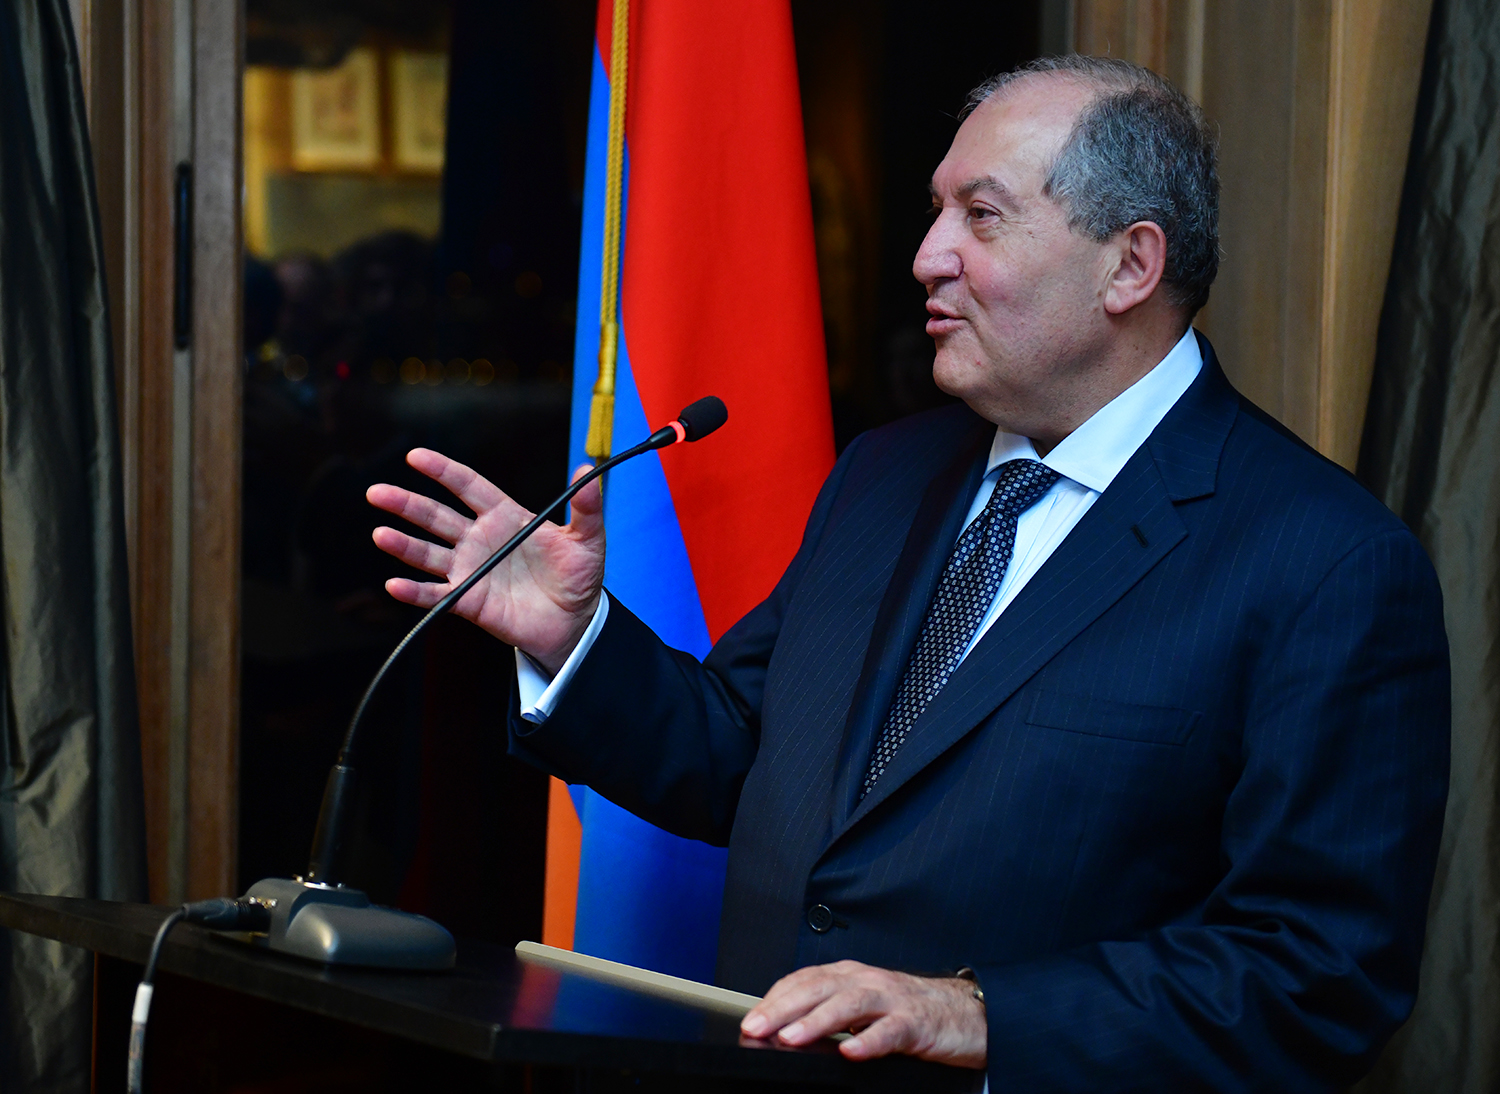 Сегодняшняя Армения движется в правильном направлении к свободе и достоинству - президент